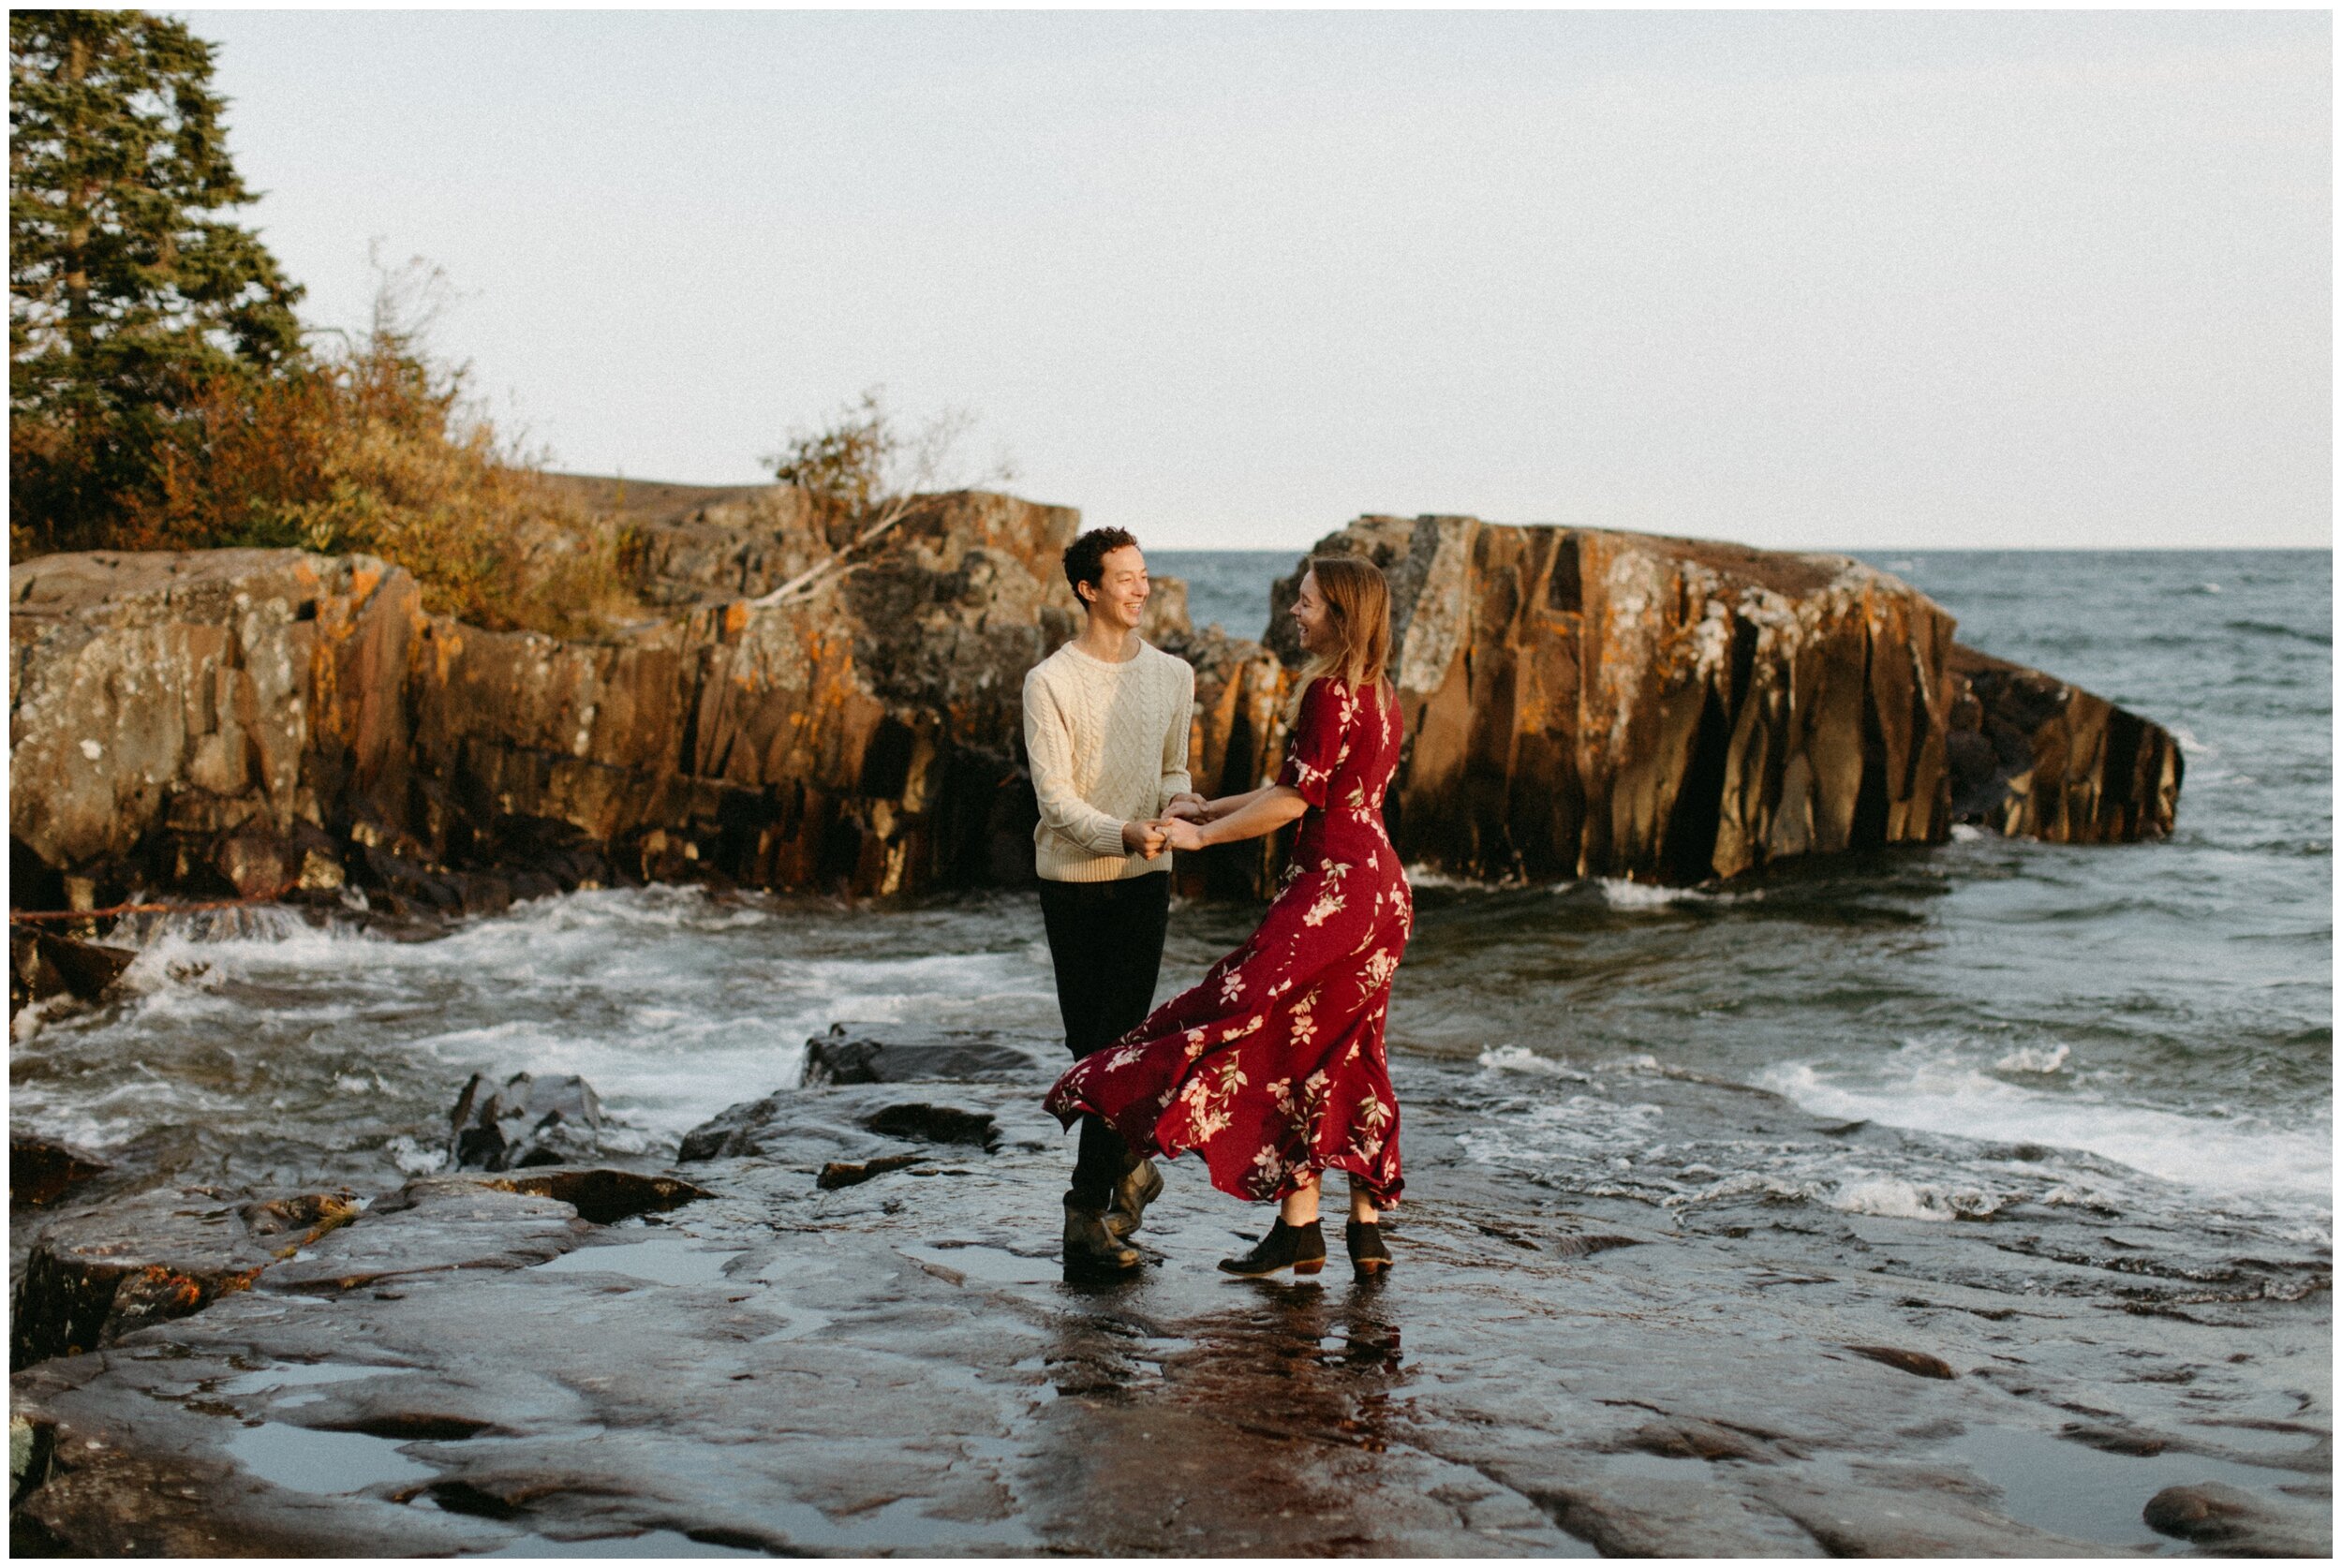 Minnesota fall sunset engagement session in Grand Marais by wedding photographer Britt DeZeeuw